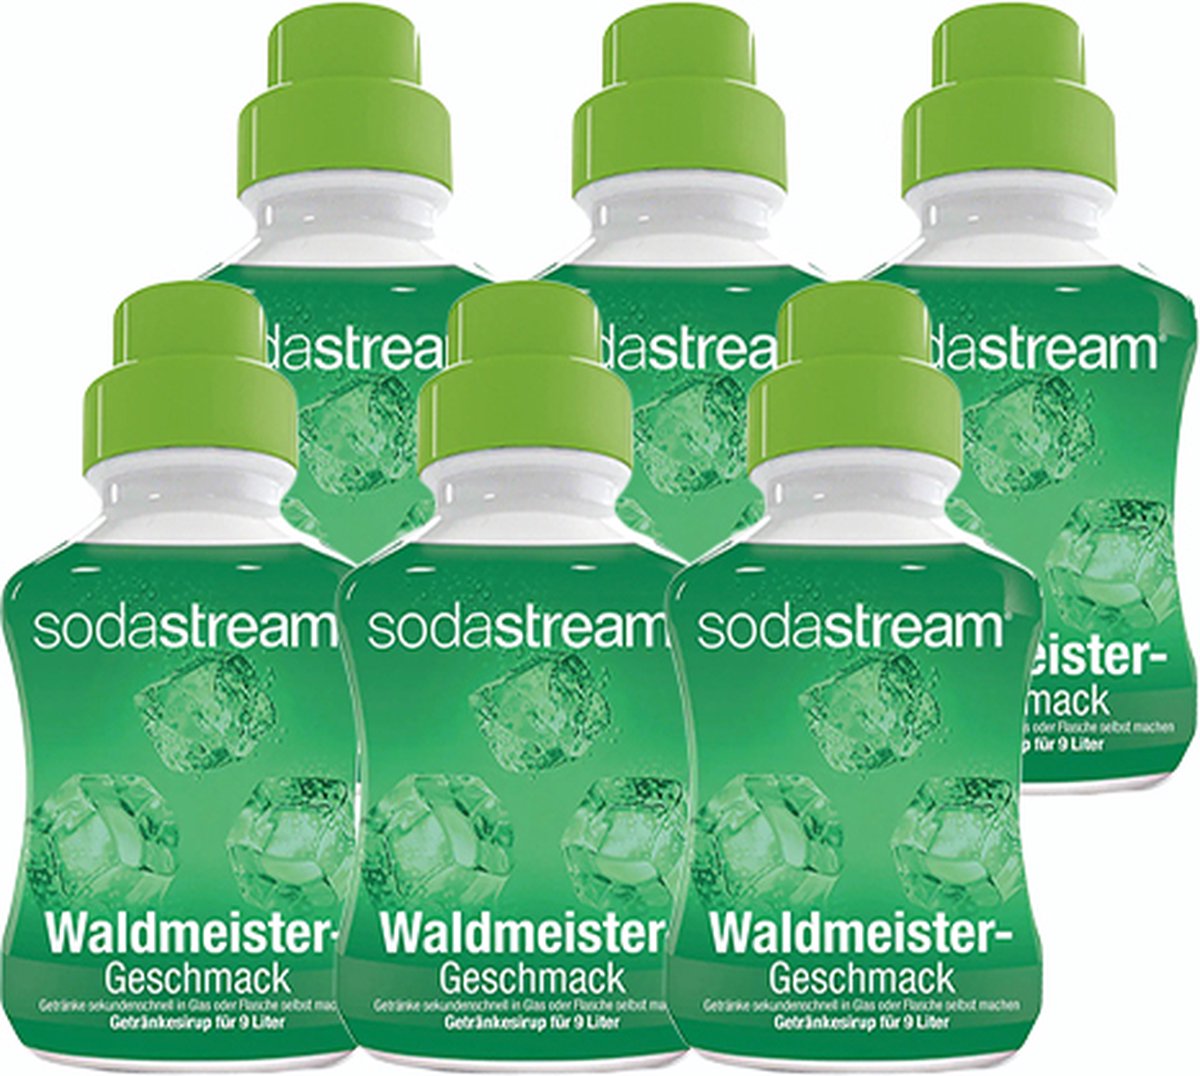 Sodastream - Waldmeister (lievevrouwebedstro) - 6x 375ml | bol.com